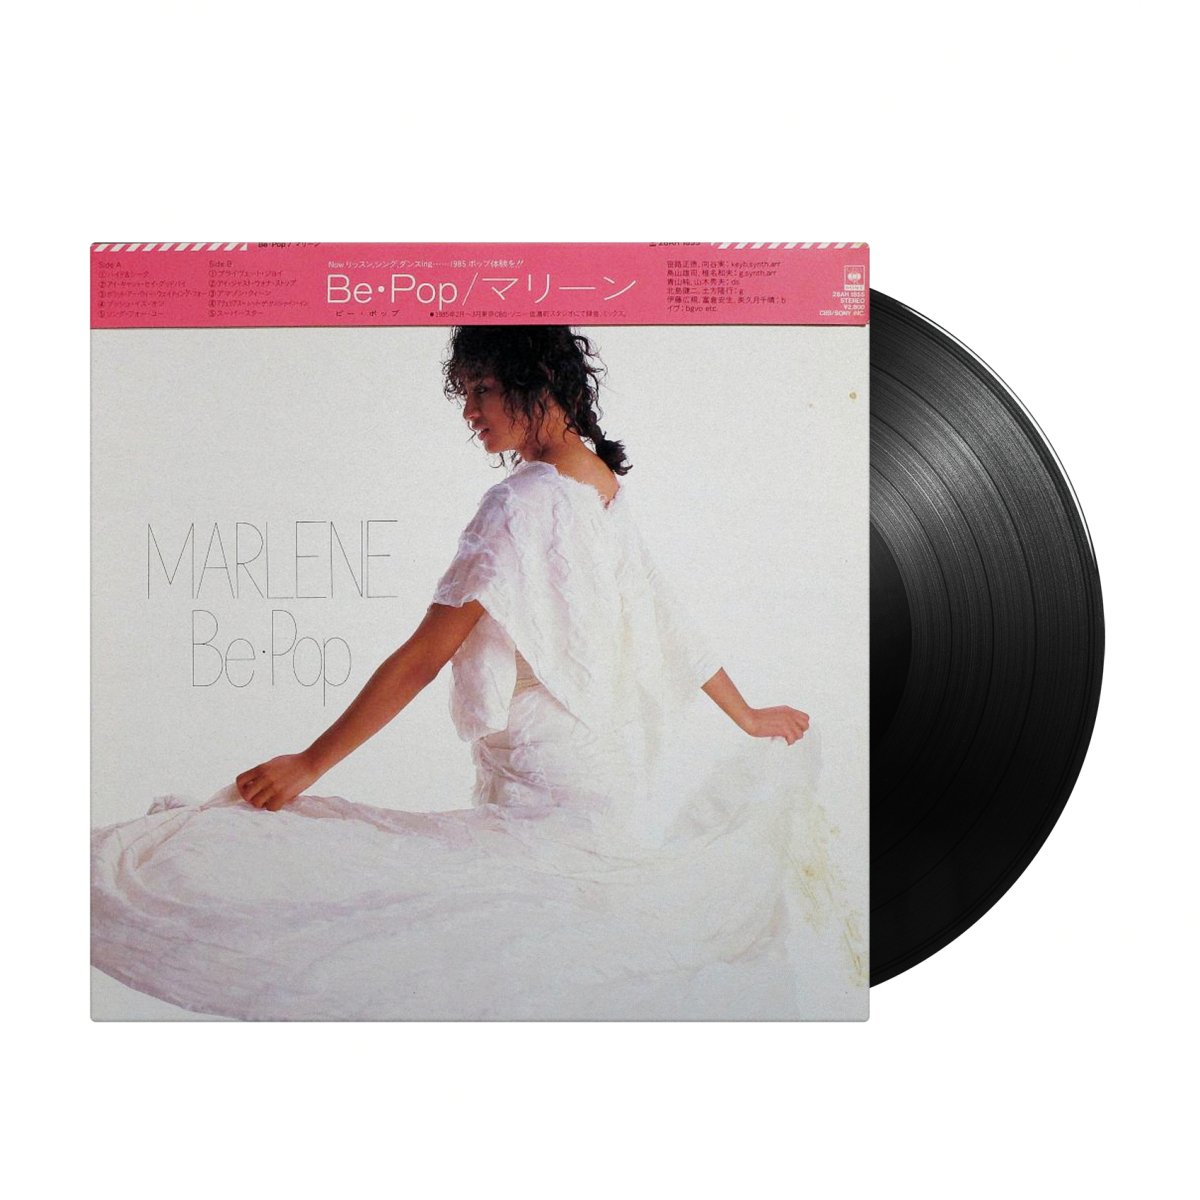 Marlene - Be・Pop (Japan Import) - Inner Ocean Records